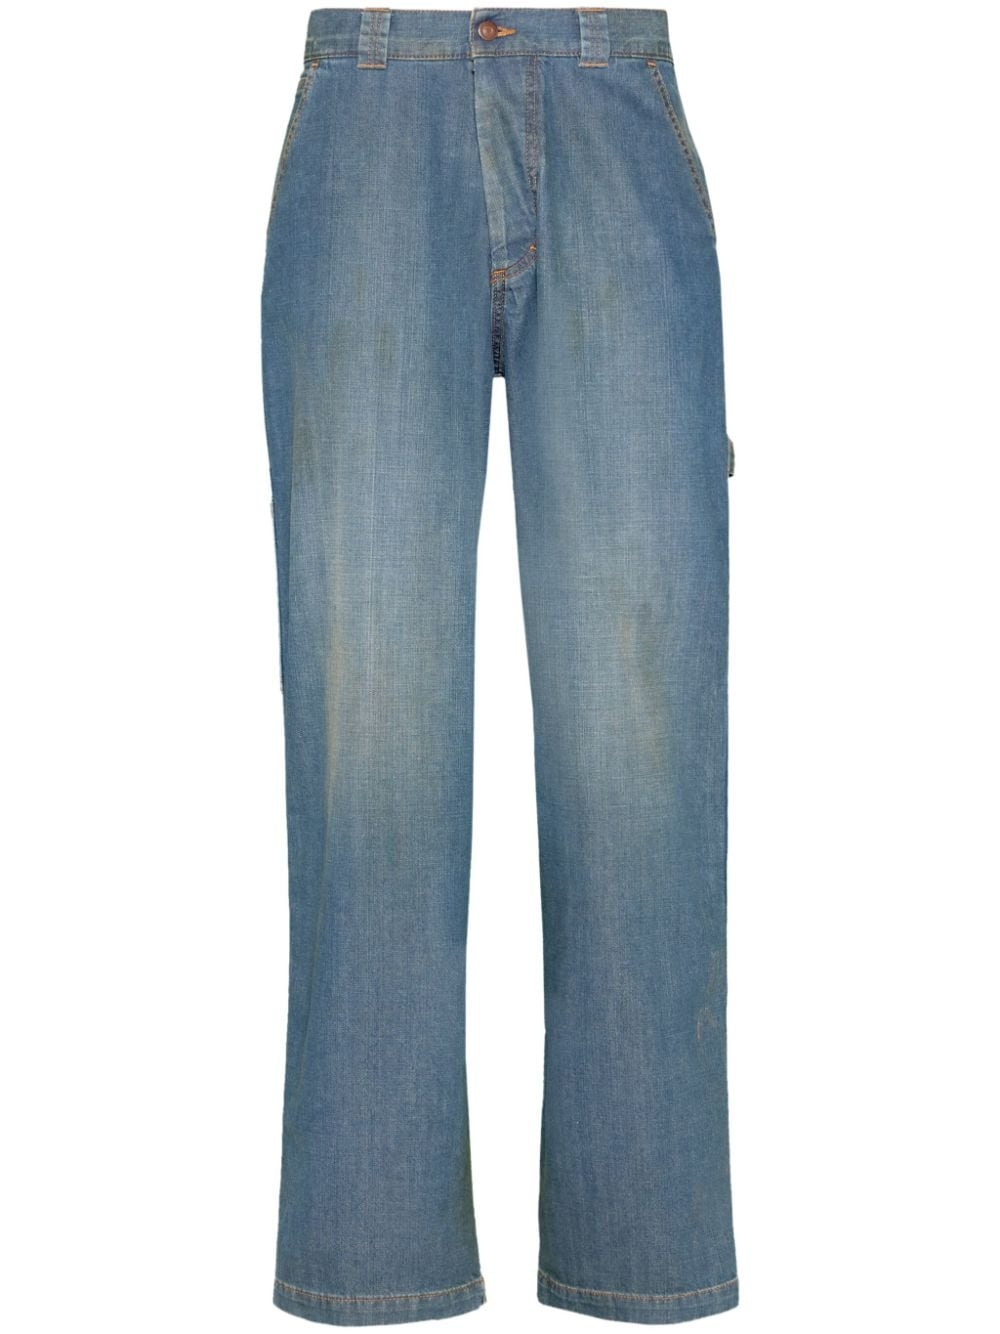 Denim cotton jeans - 1